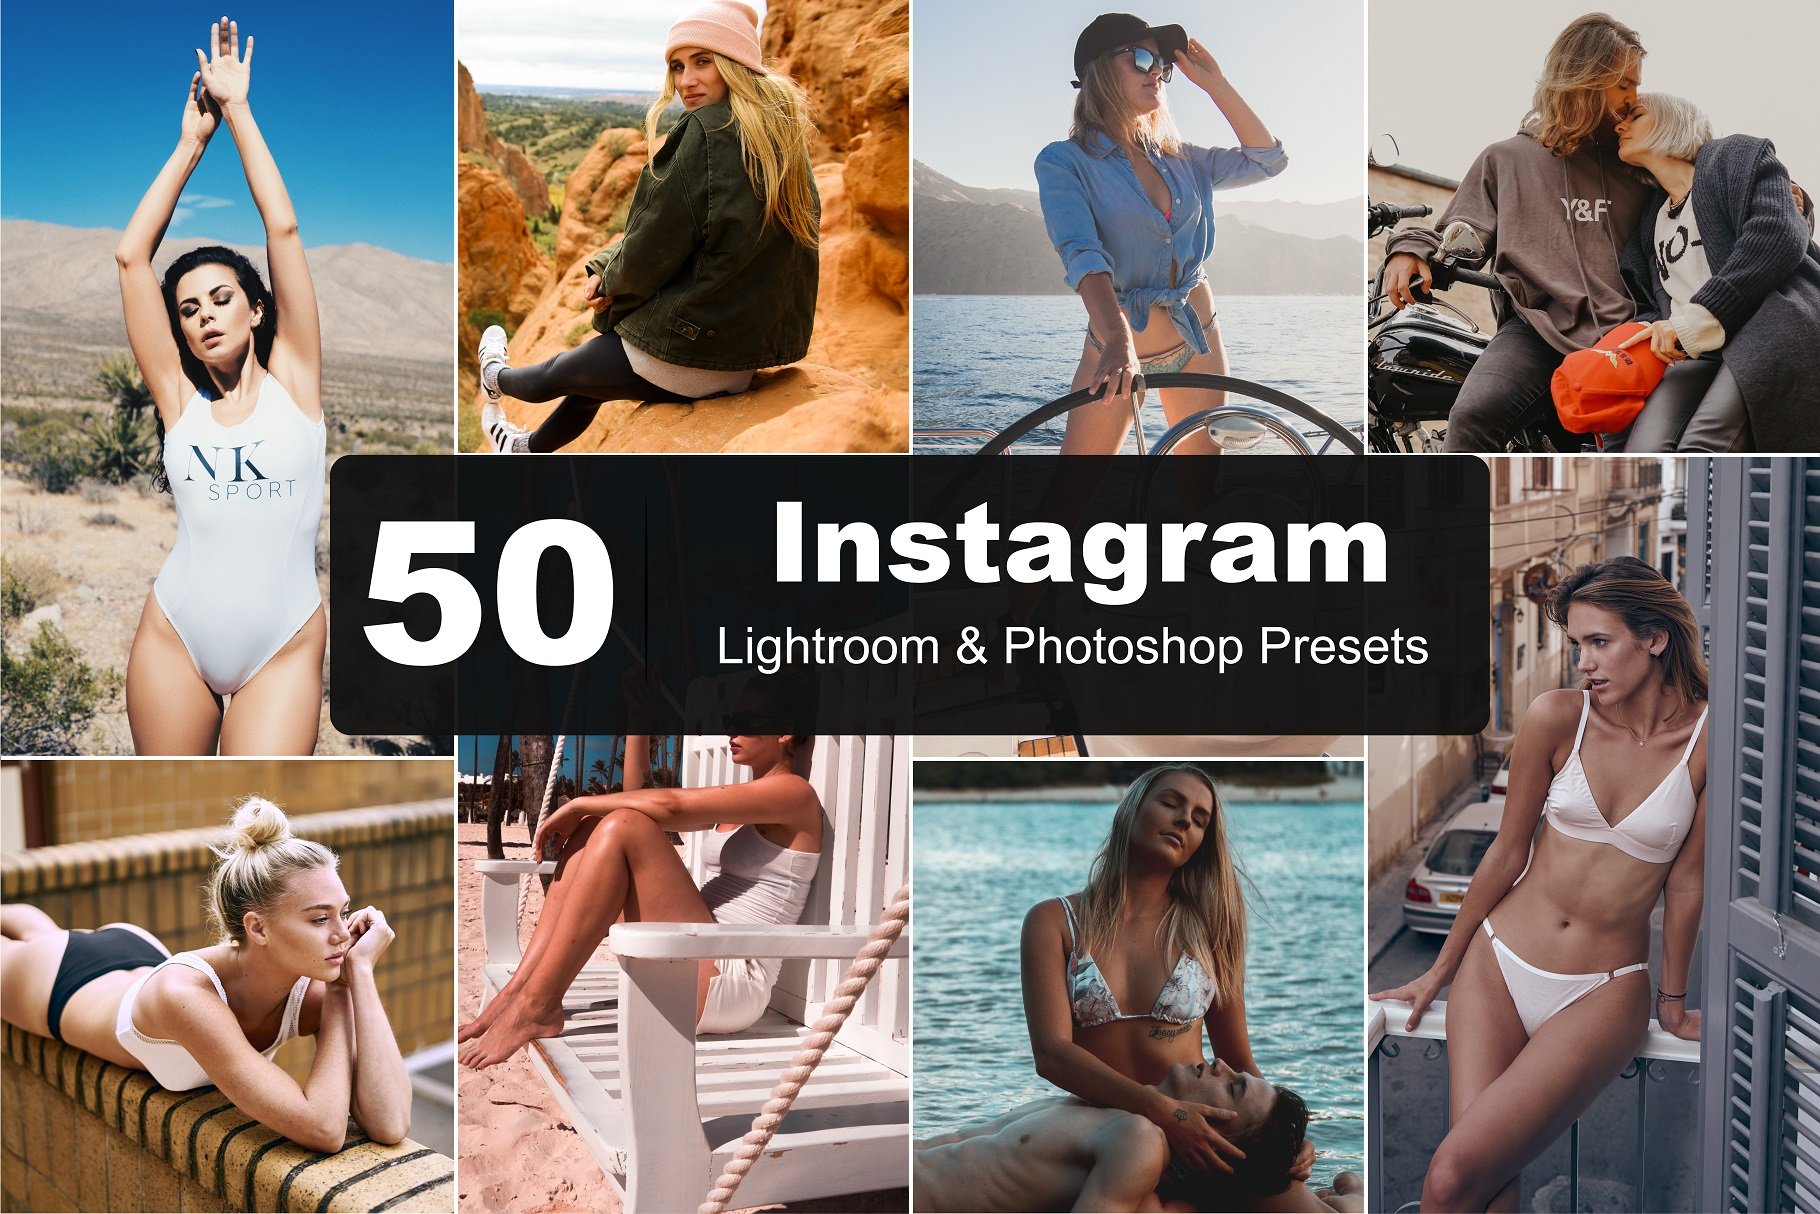 50 Instagram Lightroom Presetscover image.